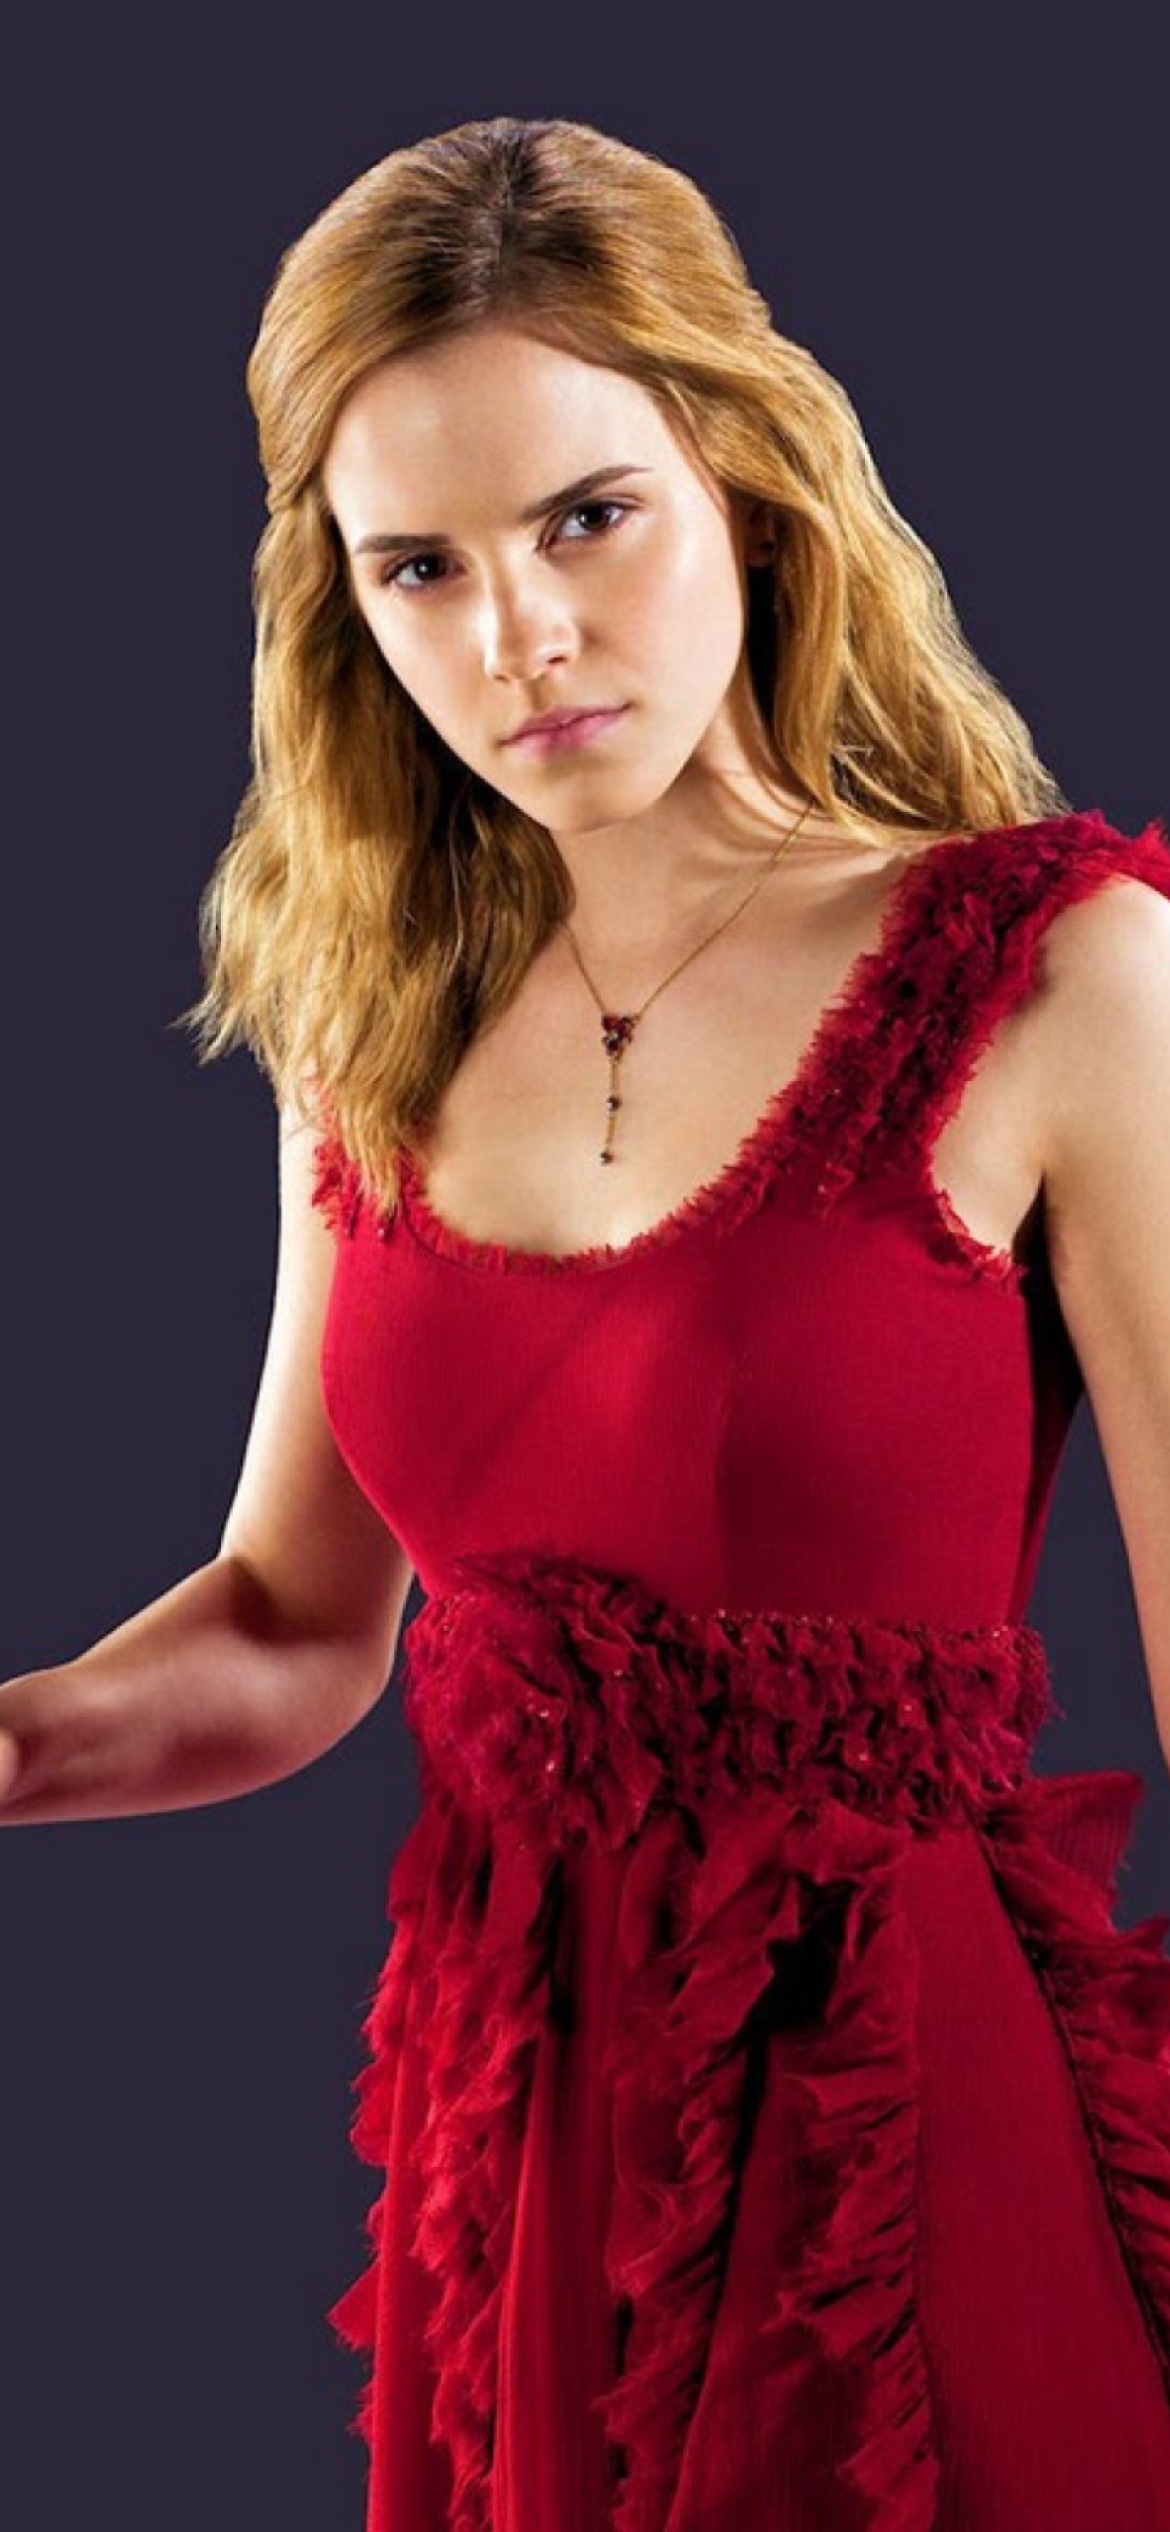 Emma Watson In Red Dress wallpaper 1170x2532